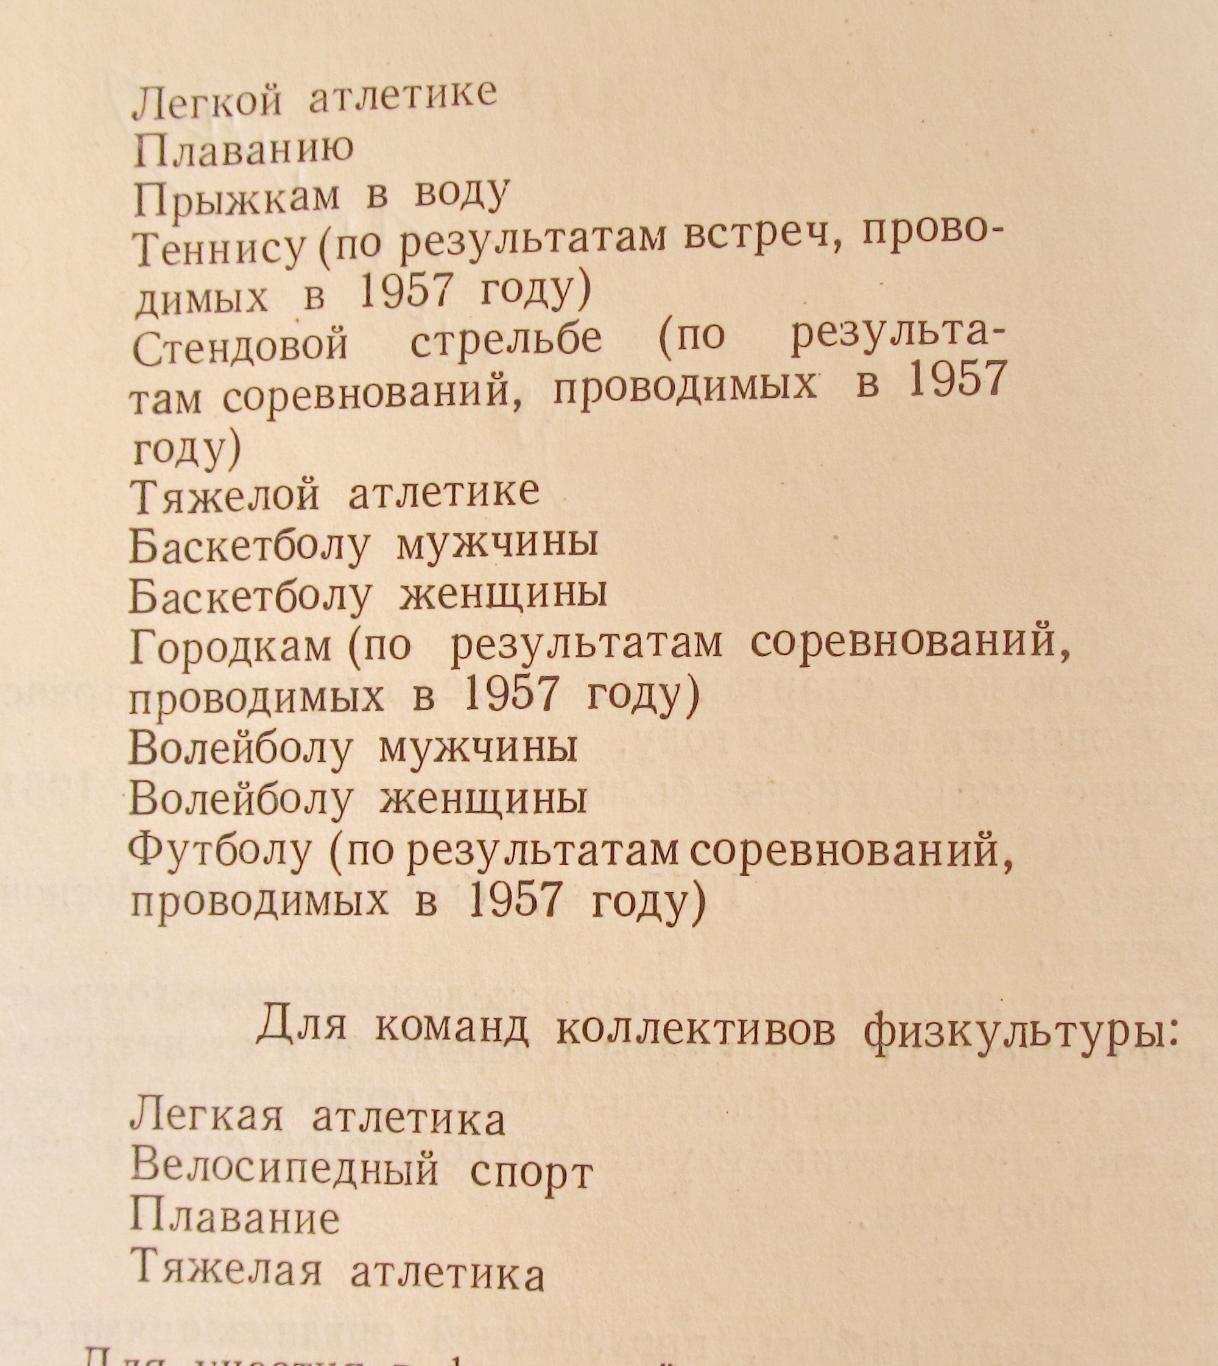 VI всесоюзная летняя спартакиада ДСО Локомотив, 1958 год. 2